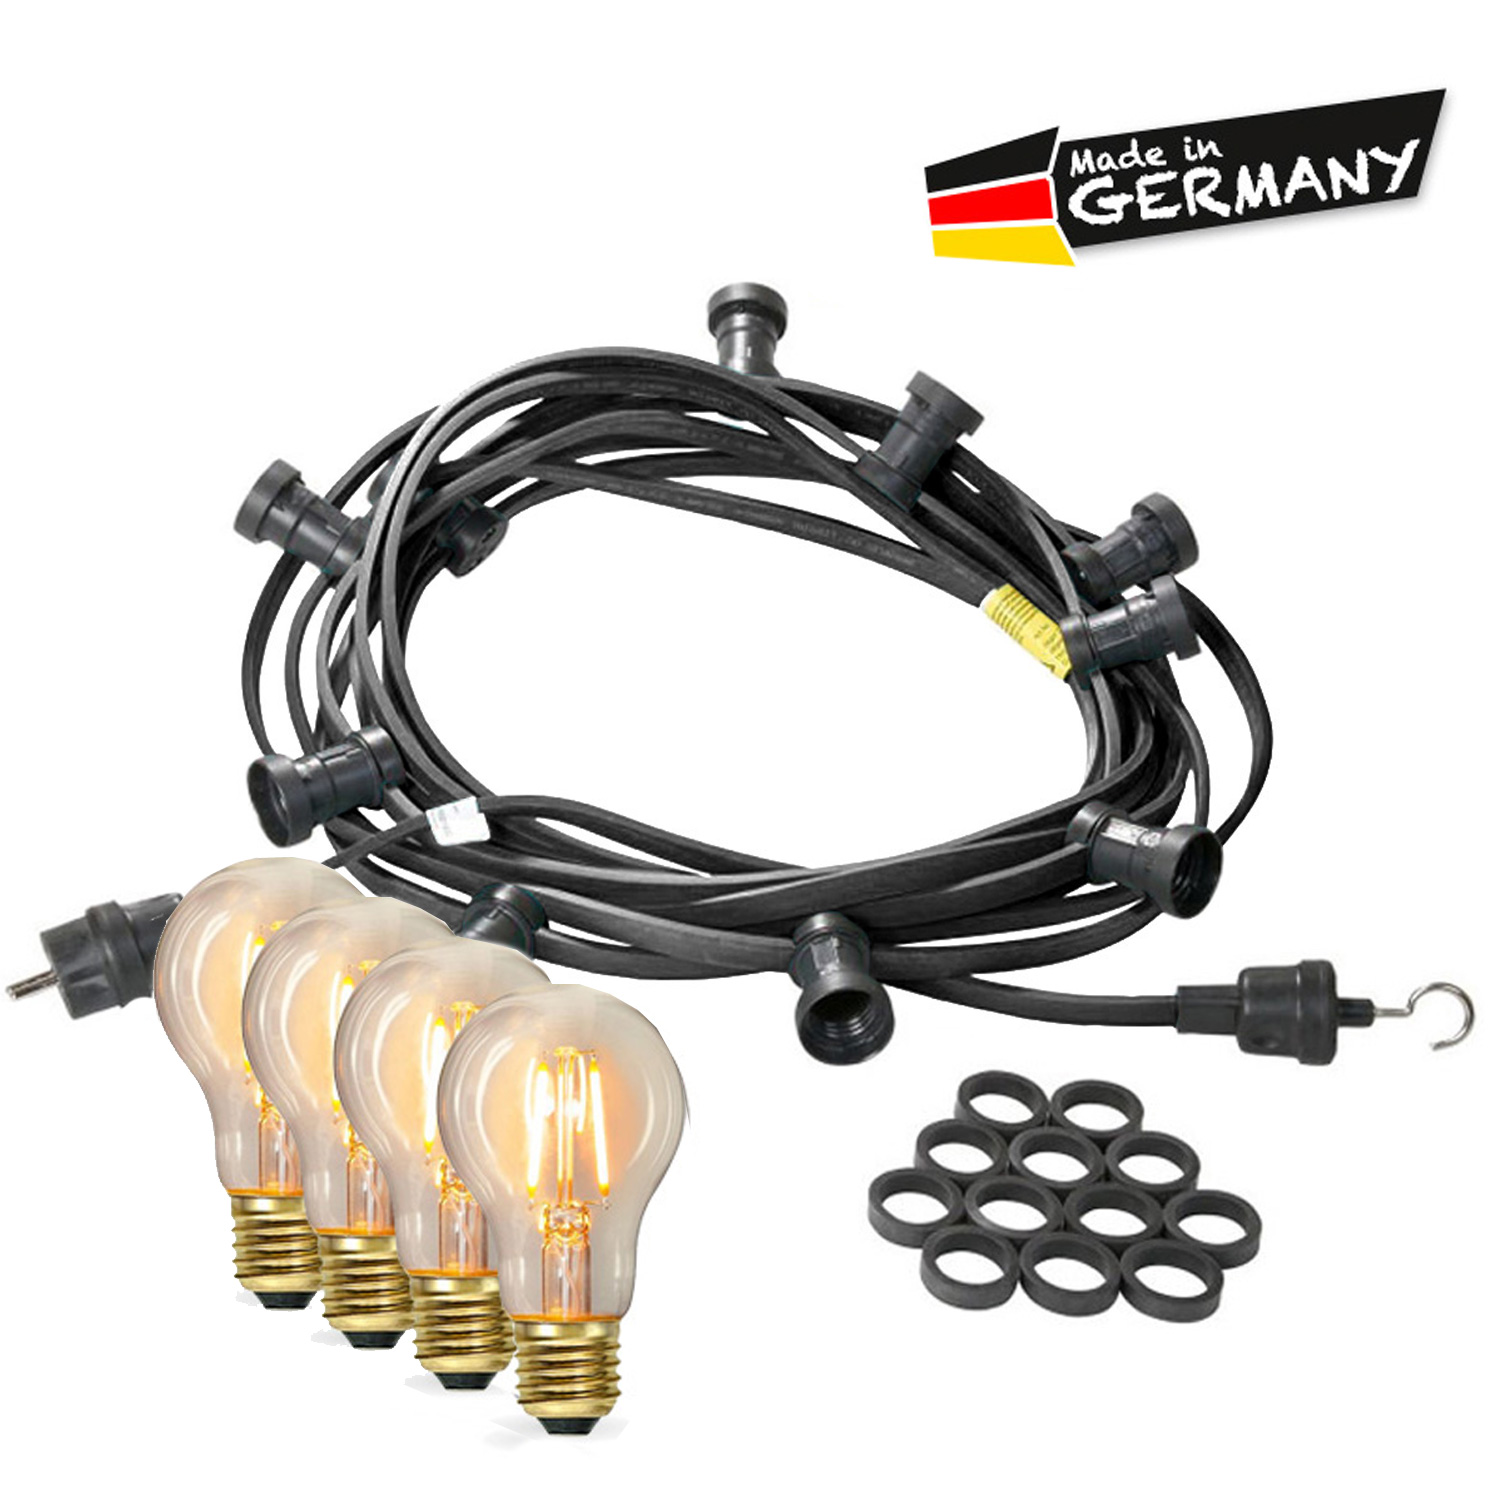 Illu-/Partylichterkette 10m - Außenlichterkette - Made in Germany - 10 x Edison LED Filamentlampen